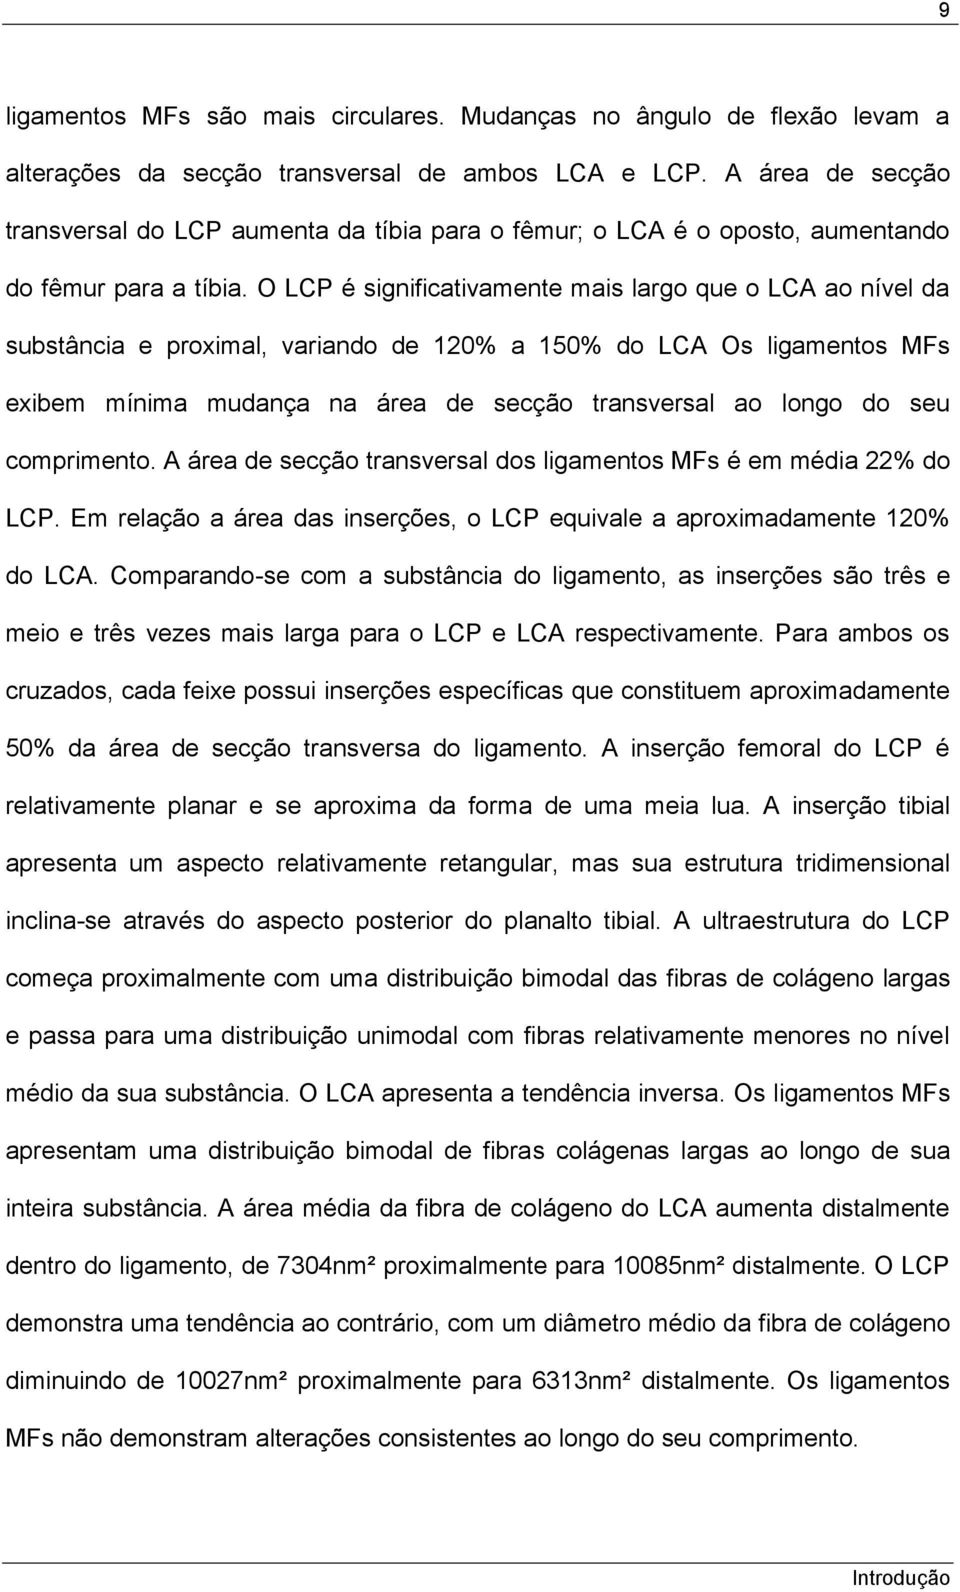 O LCP é significativamente mais largo que o LCA ao nível da substância e proximal, variando de 120% a 150% do LCA Os ligamentos MFs exibem mínima mudança na área de secção transversal ao longo do seu